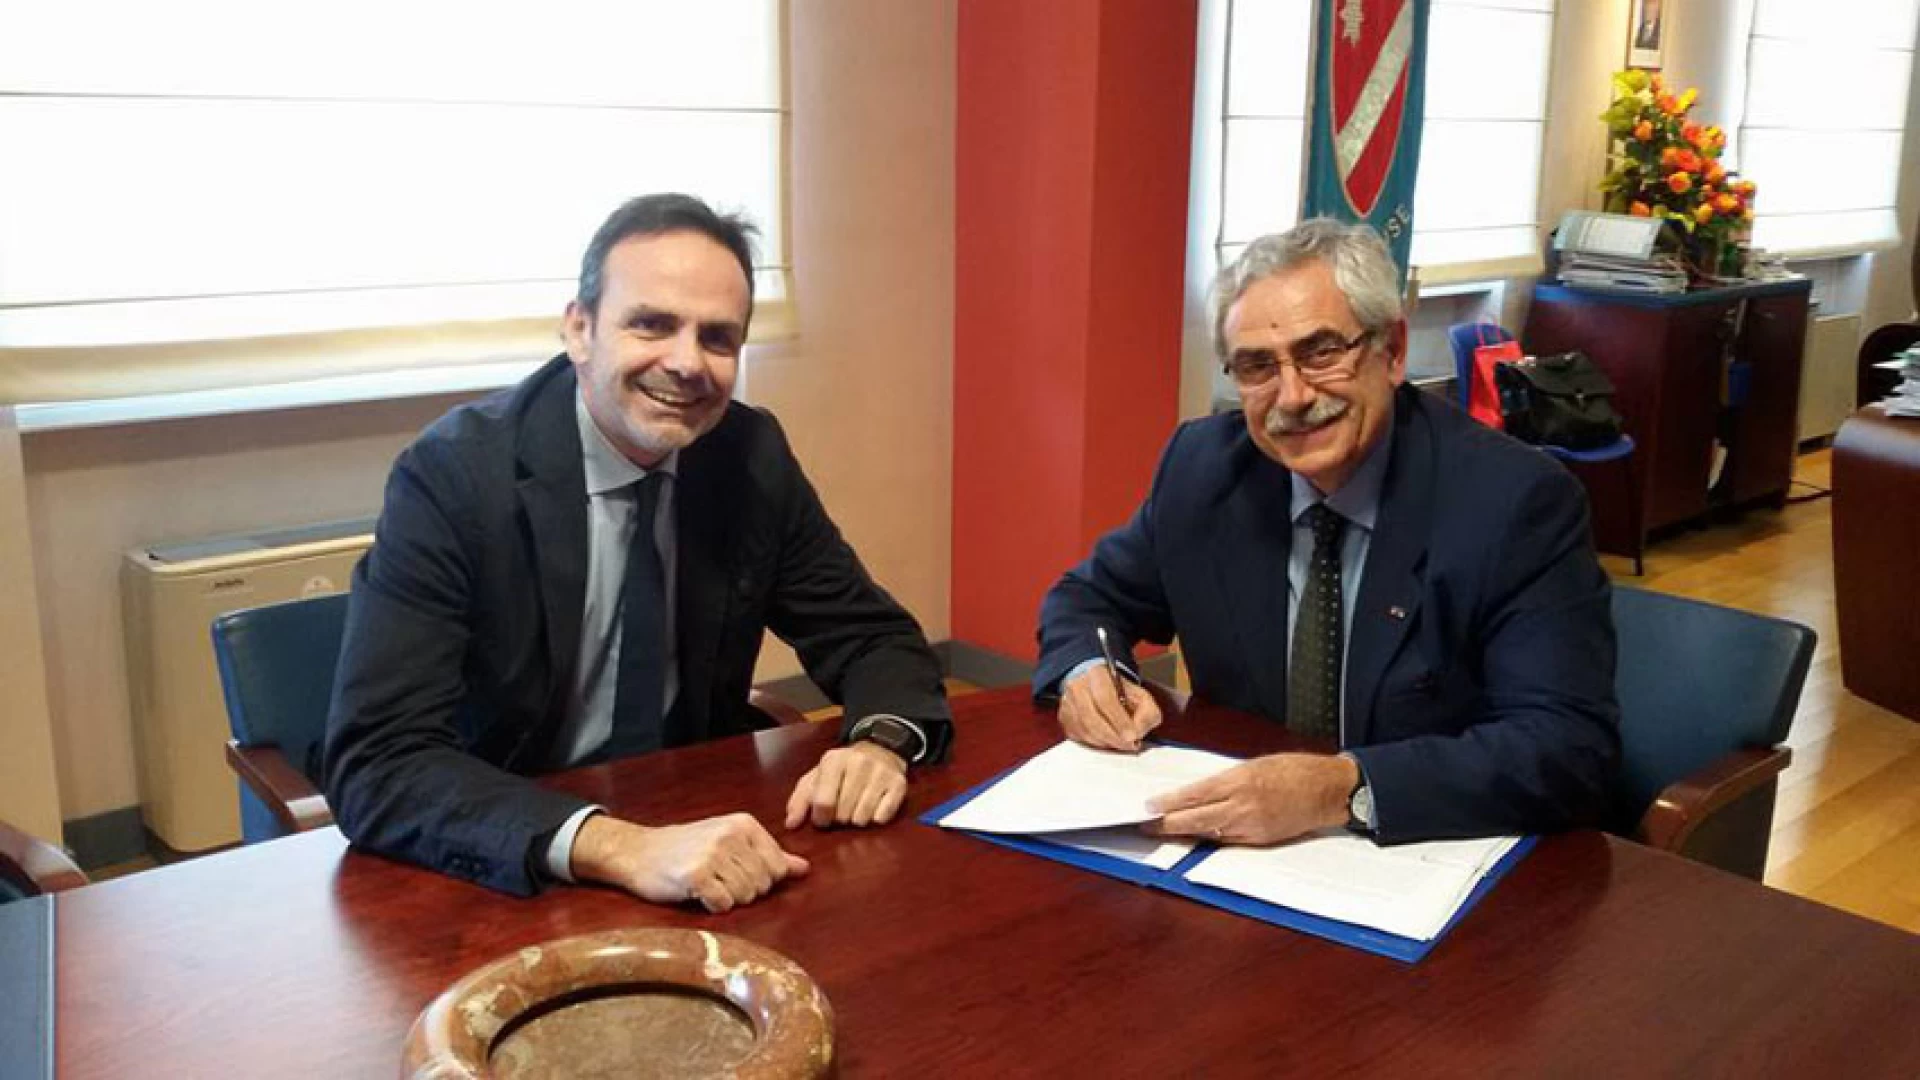 Isernia: Via Berta diventa la casa delle istituzioni locali. Coia e Frattura firmano il contratto di locazione con la Regione Molise.